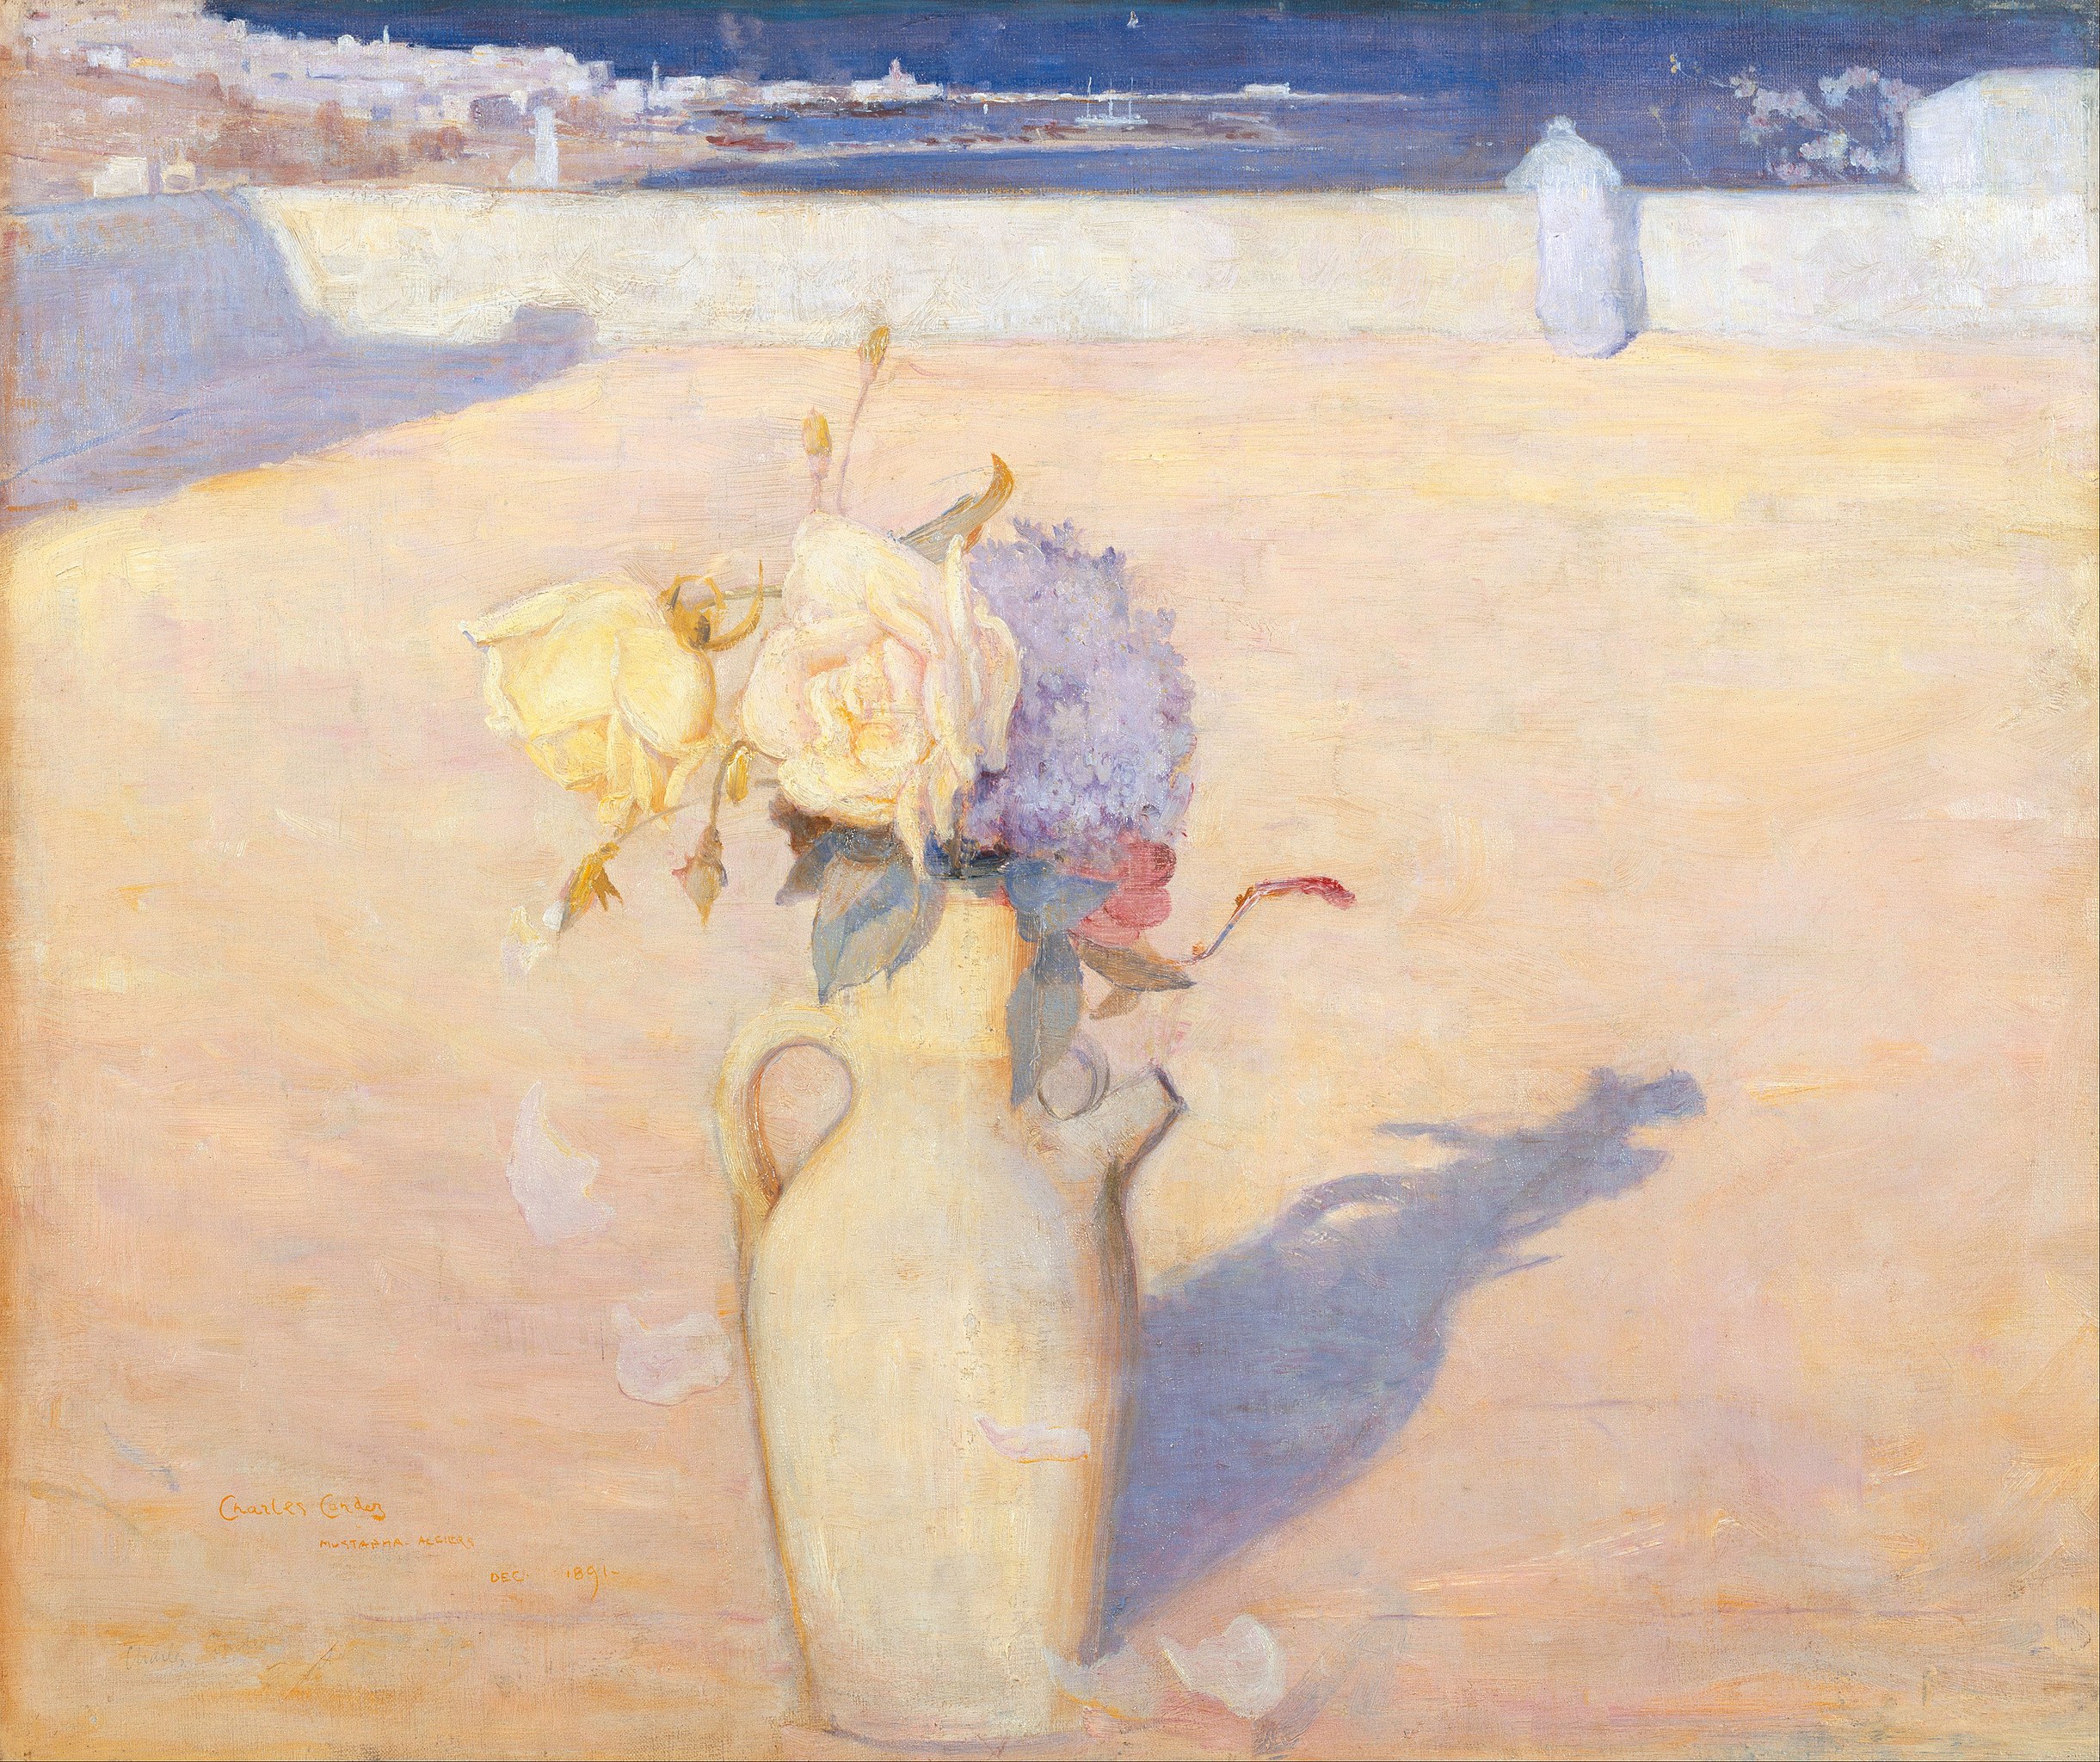 热沙，穆斯塔法，阿尔及尔 by 查尔斯 爱德华·康德 - 1891 - 63 x 72 cm 新南威尔士美术馆